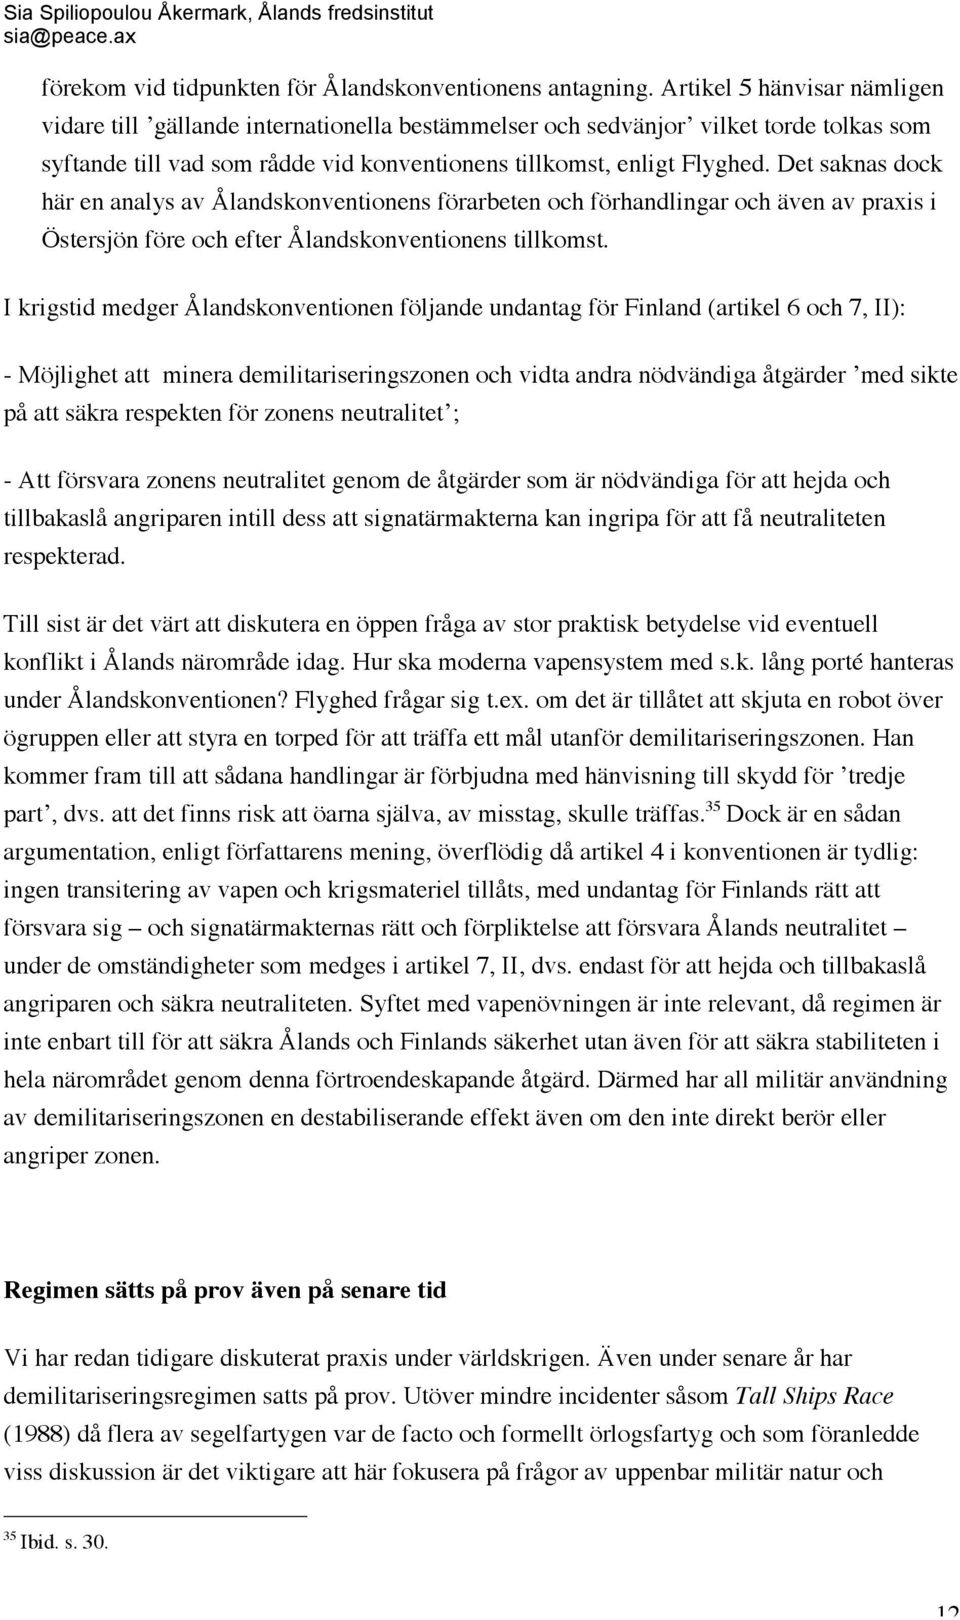 Det saknas dock här en analys av Ålandskonventionens förarbeten och förhandlingar och även av praxis i Östersjön före och efter Ålandskonventionens tillkomst.